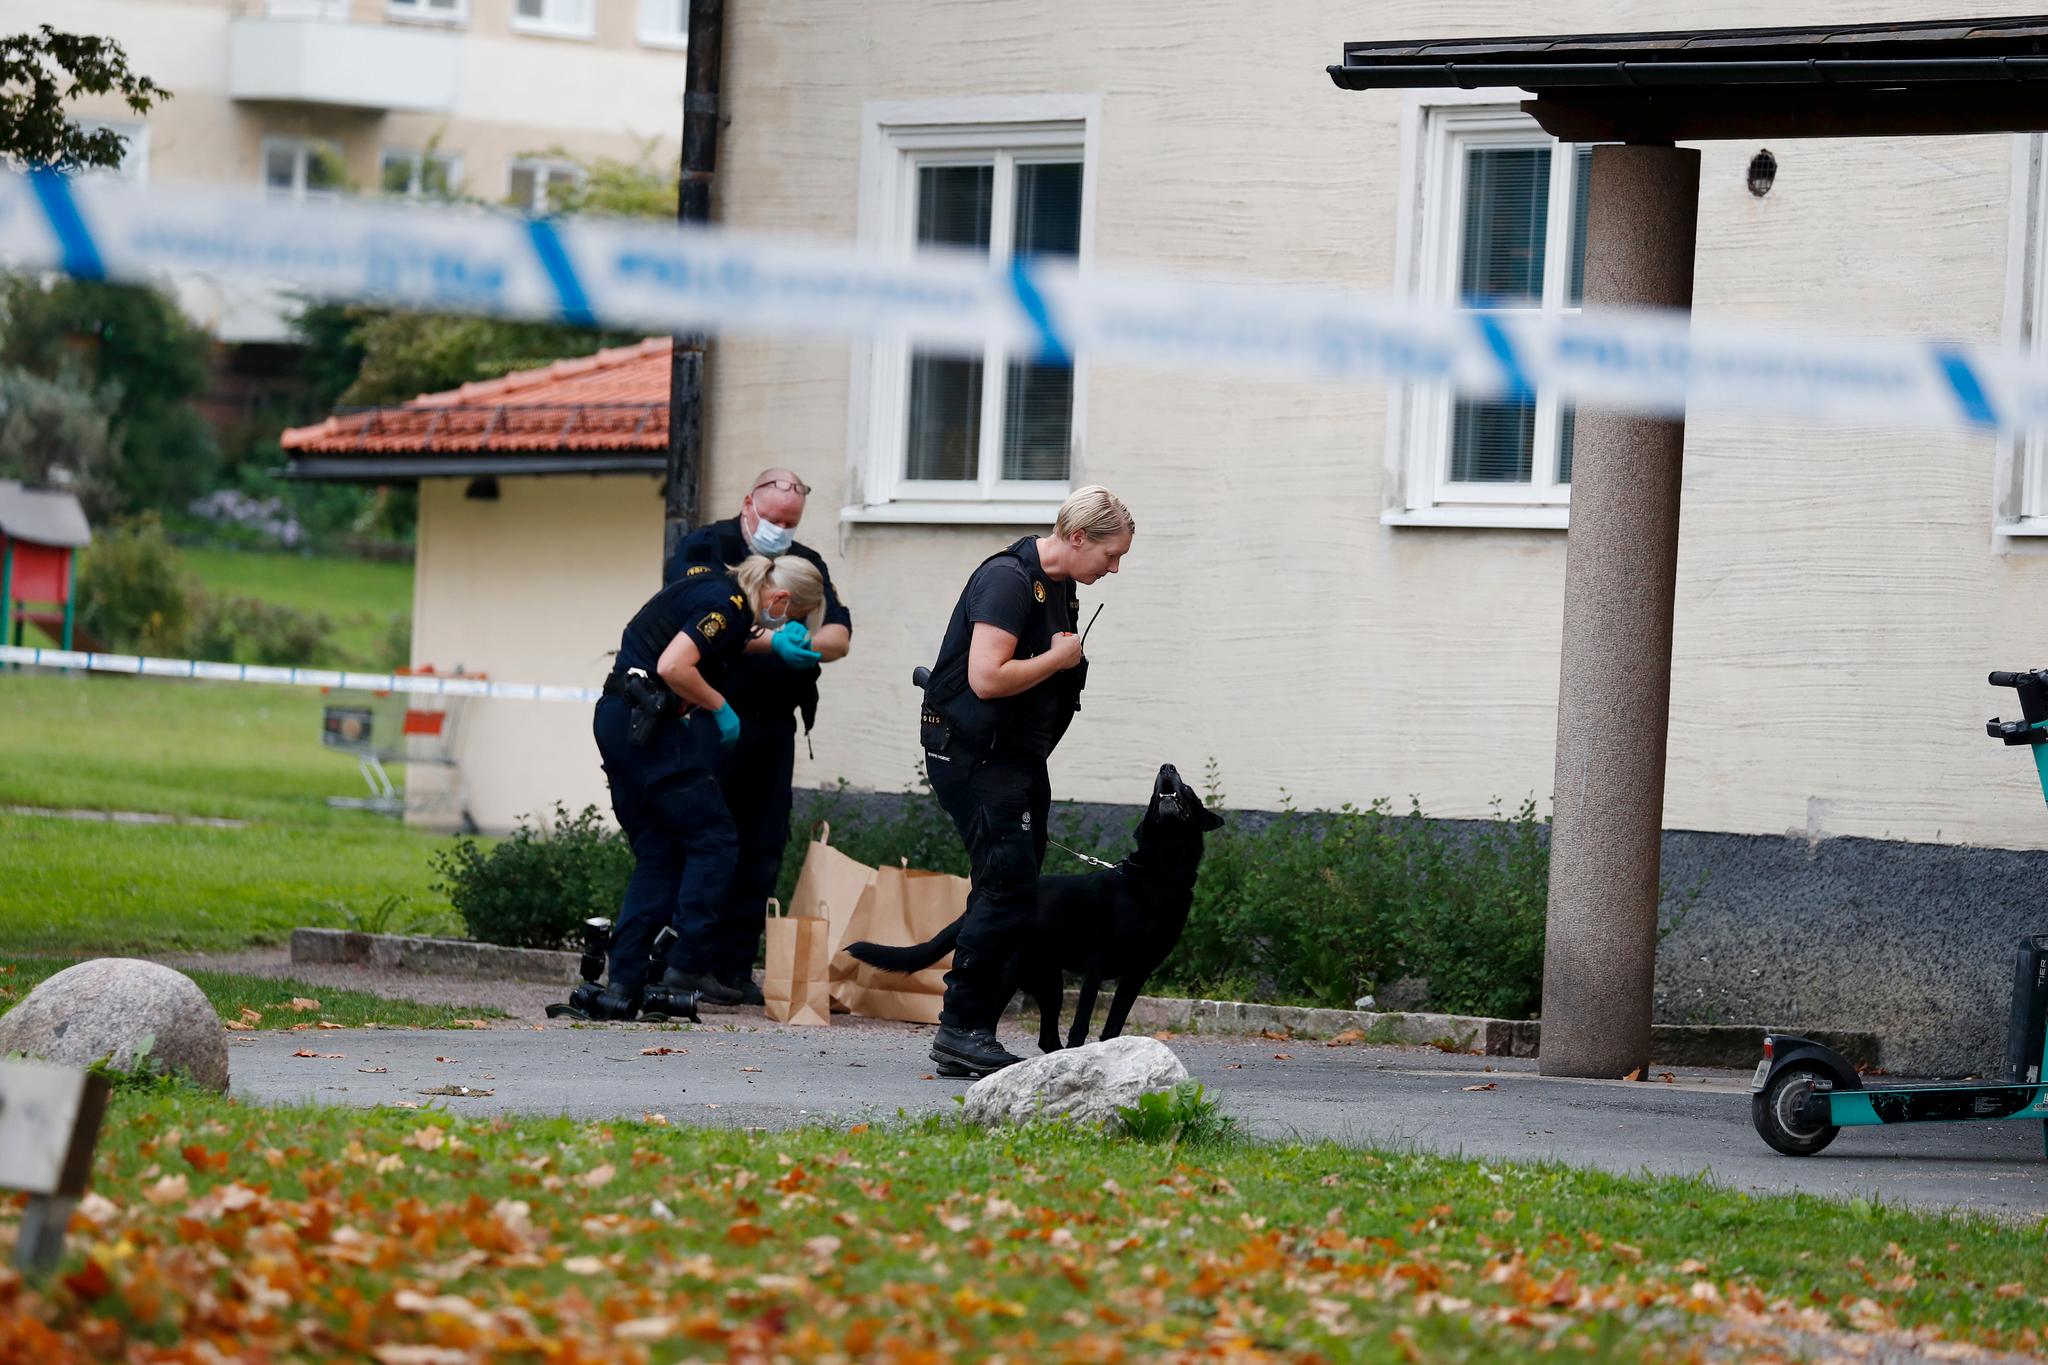 En mann ble funnet skutt i en trappeoppgang i Uppsala forrige uke. Mannen, som jobbet i hjemmetjenesten, døde senere. Han skal ikke ha noen koblinger til kriminalitet. Men en person med tilknytning til Den kurdiske reven skal ha bodd på samme sted.